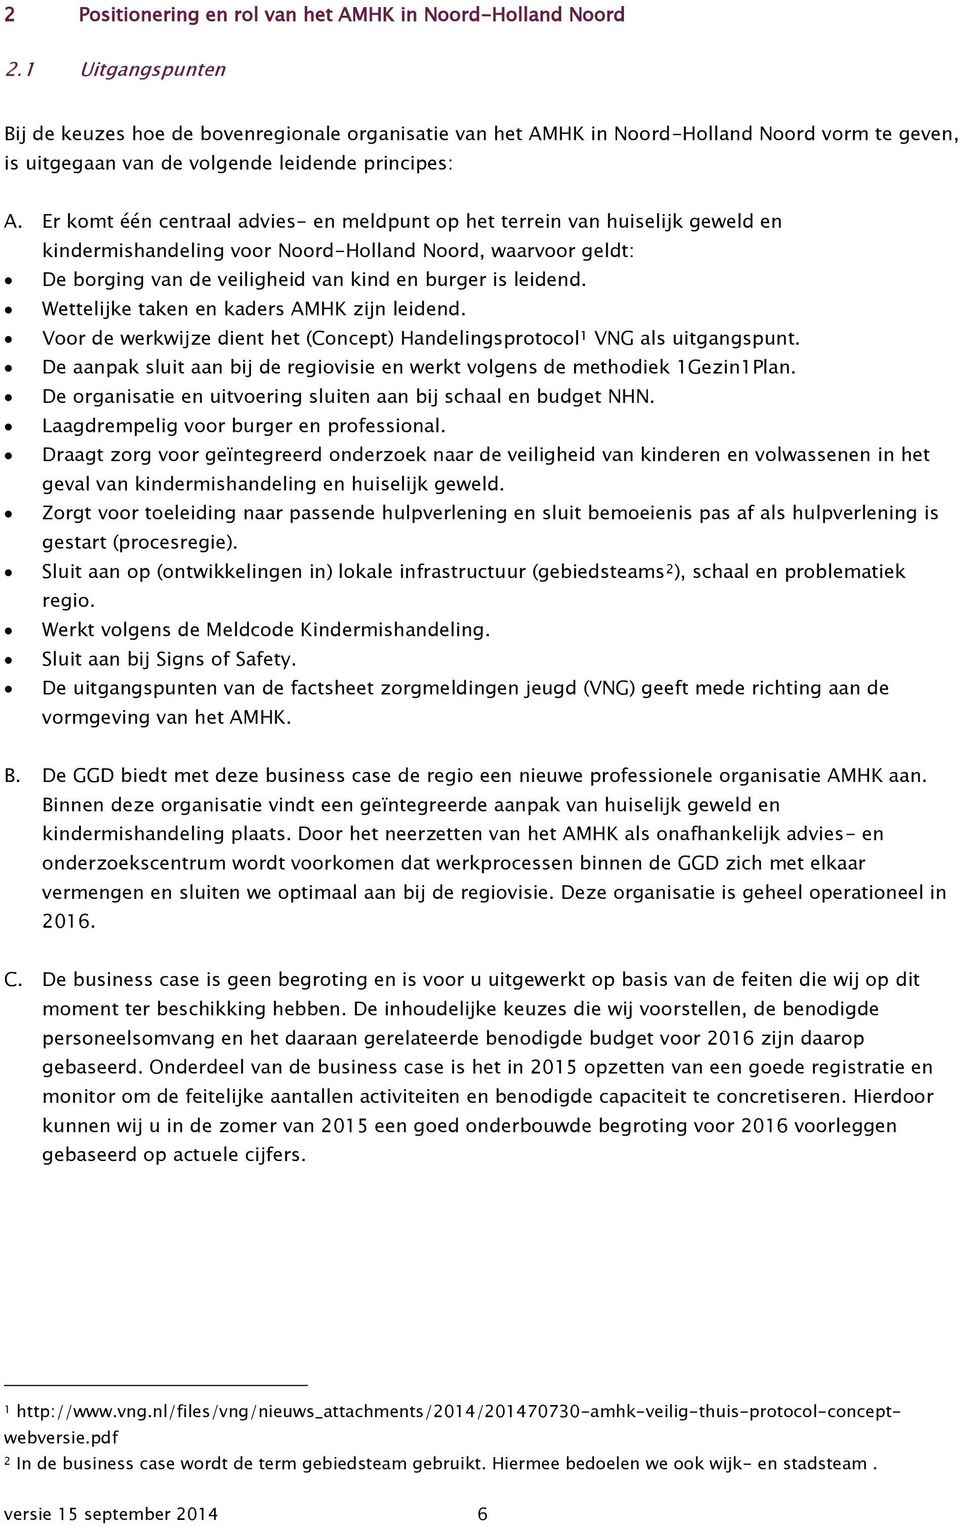 Er komt één centraal advies- en meldpunt op het terrein van huiselijk geweld en kindermishandeling voor Noord-Holland Noord, waarvoor geldt: De borging van de veiligheid van kind en burger is leidend.